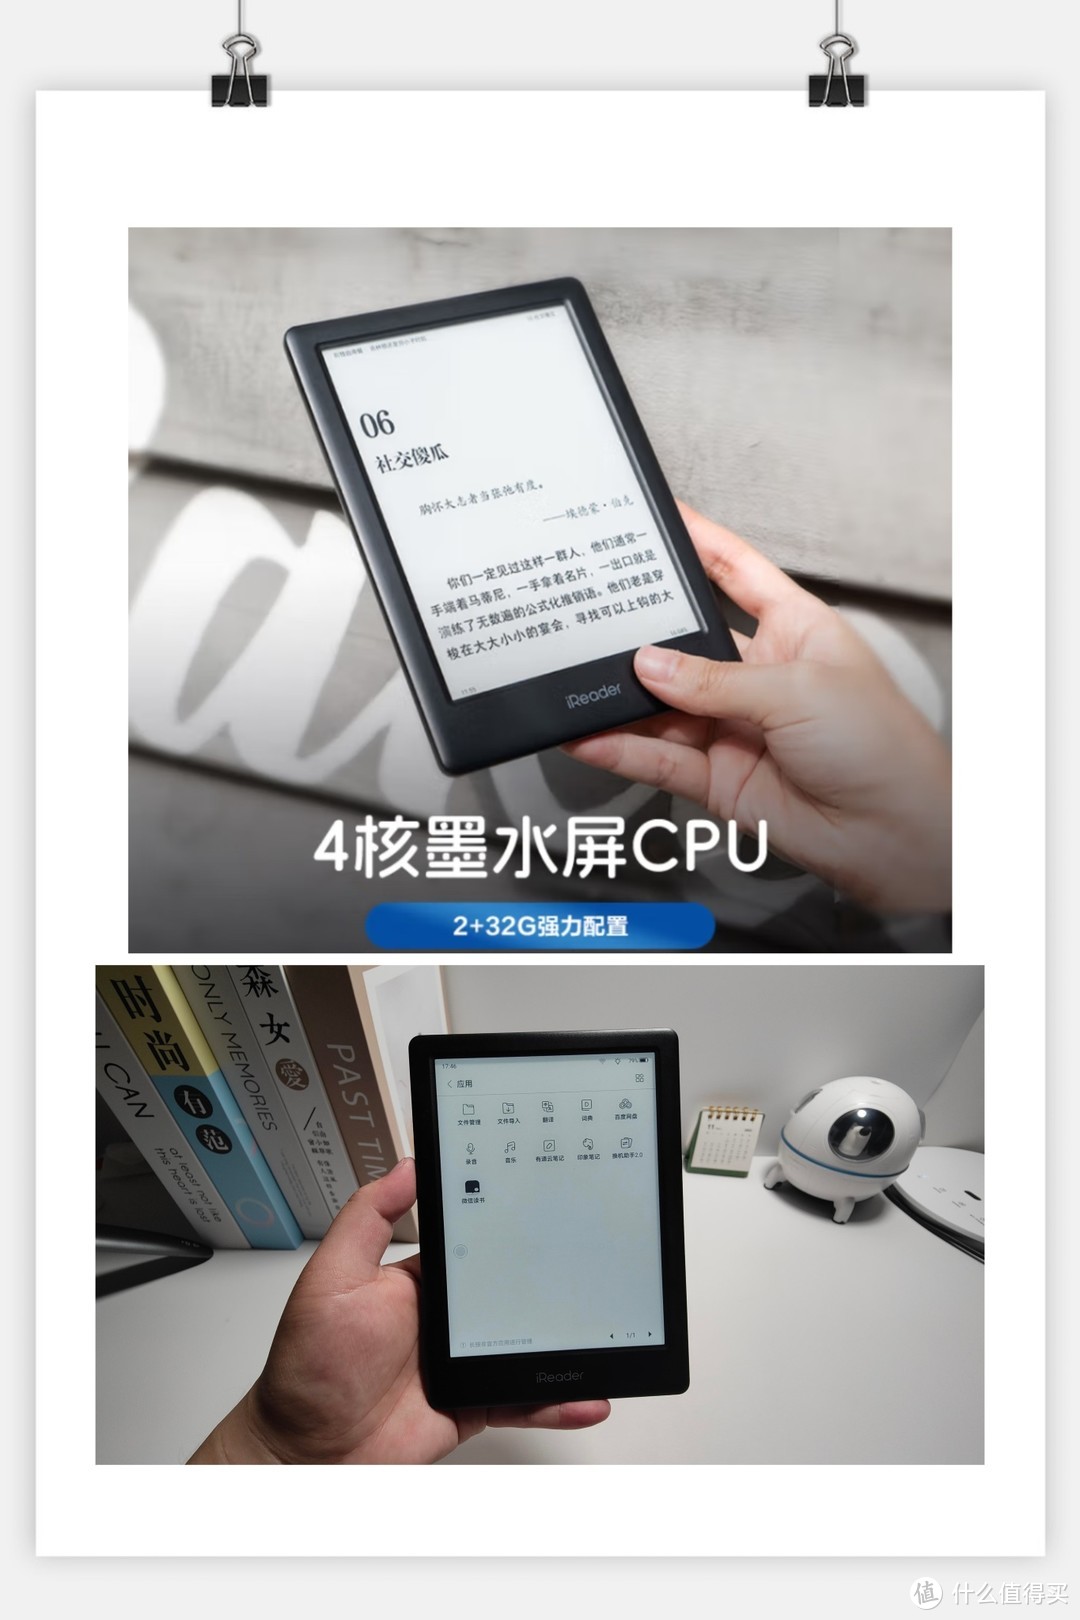 掌阅 2 月 27 日发布 iReader Neo2 墨水屏电纸书，该产品有哪些技术亮点？